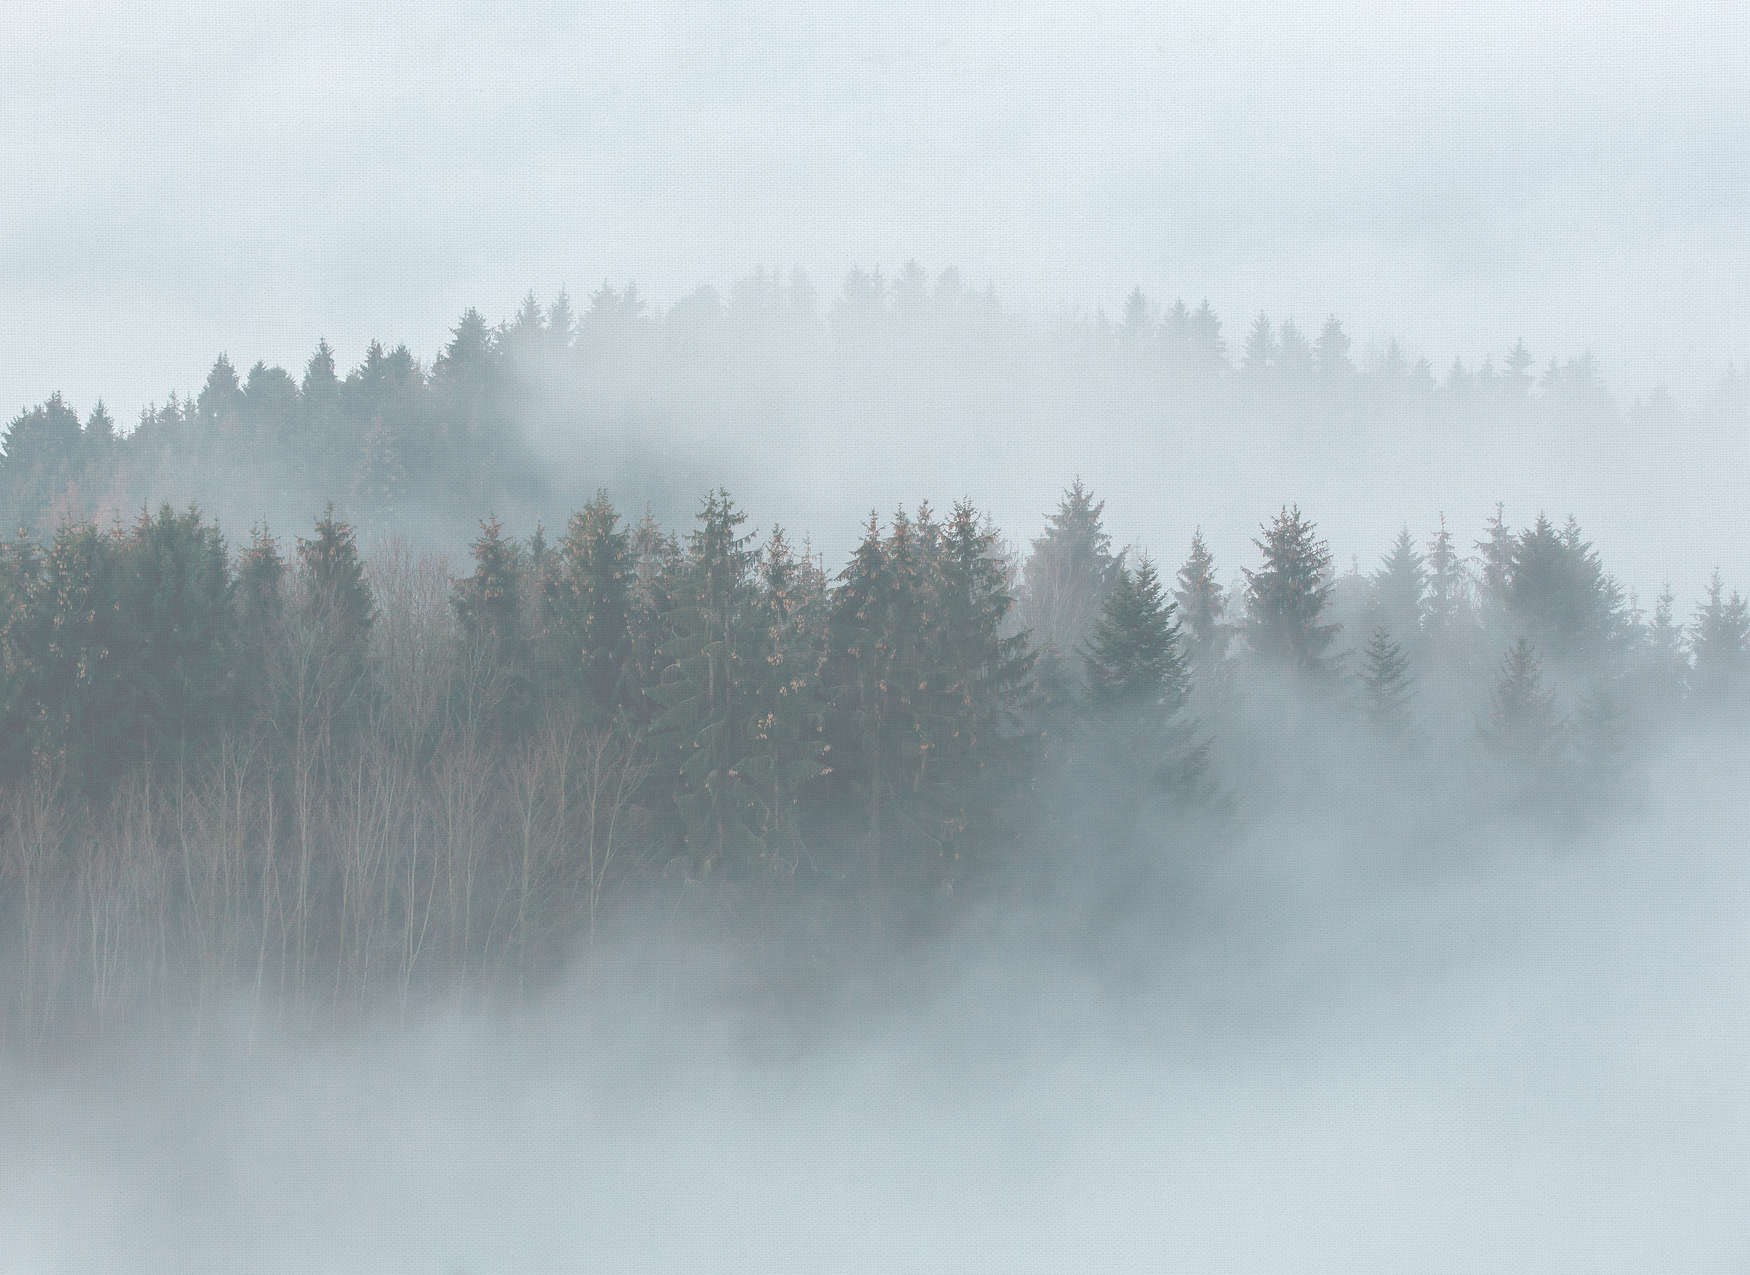             Mysterieus Bos in de Mist - Wit, Groen, Grijs
        